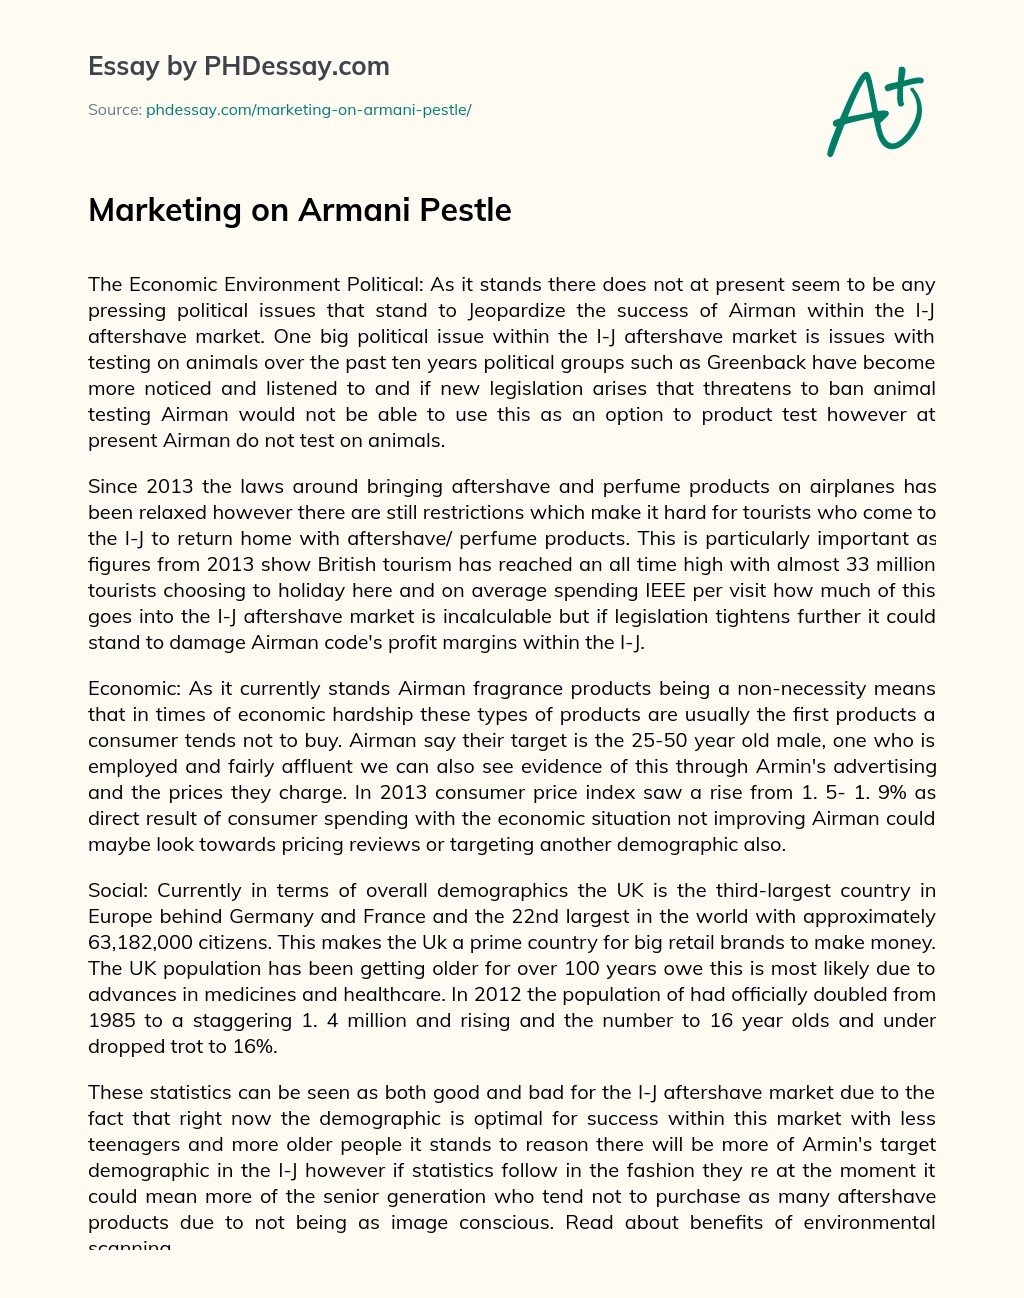 Marketing on Armani Pestle essay